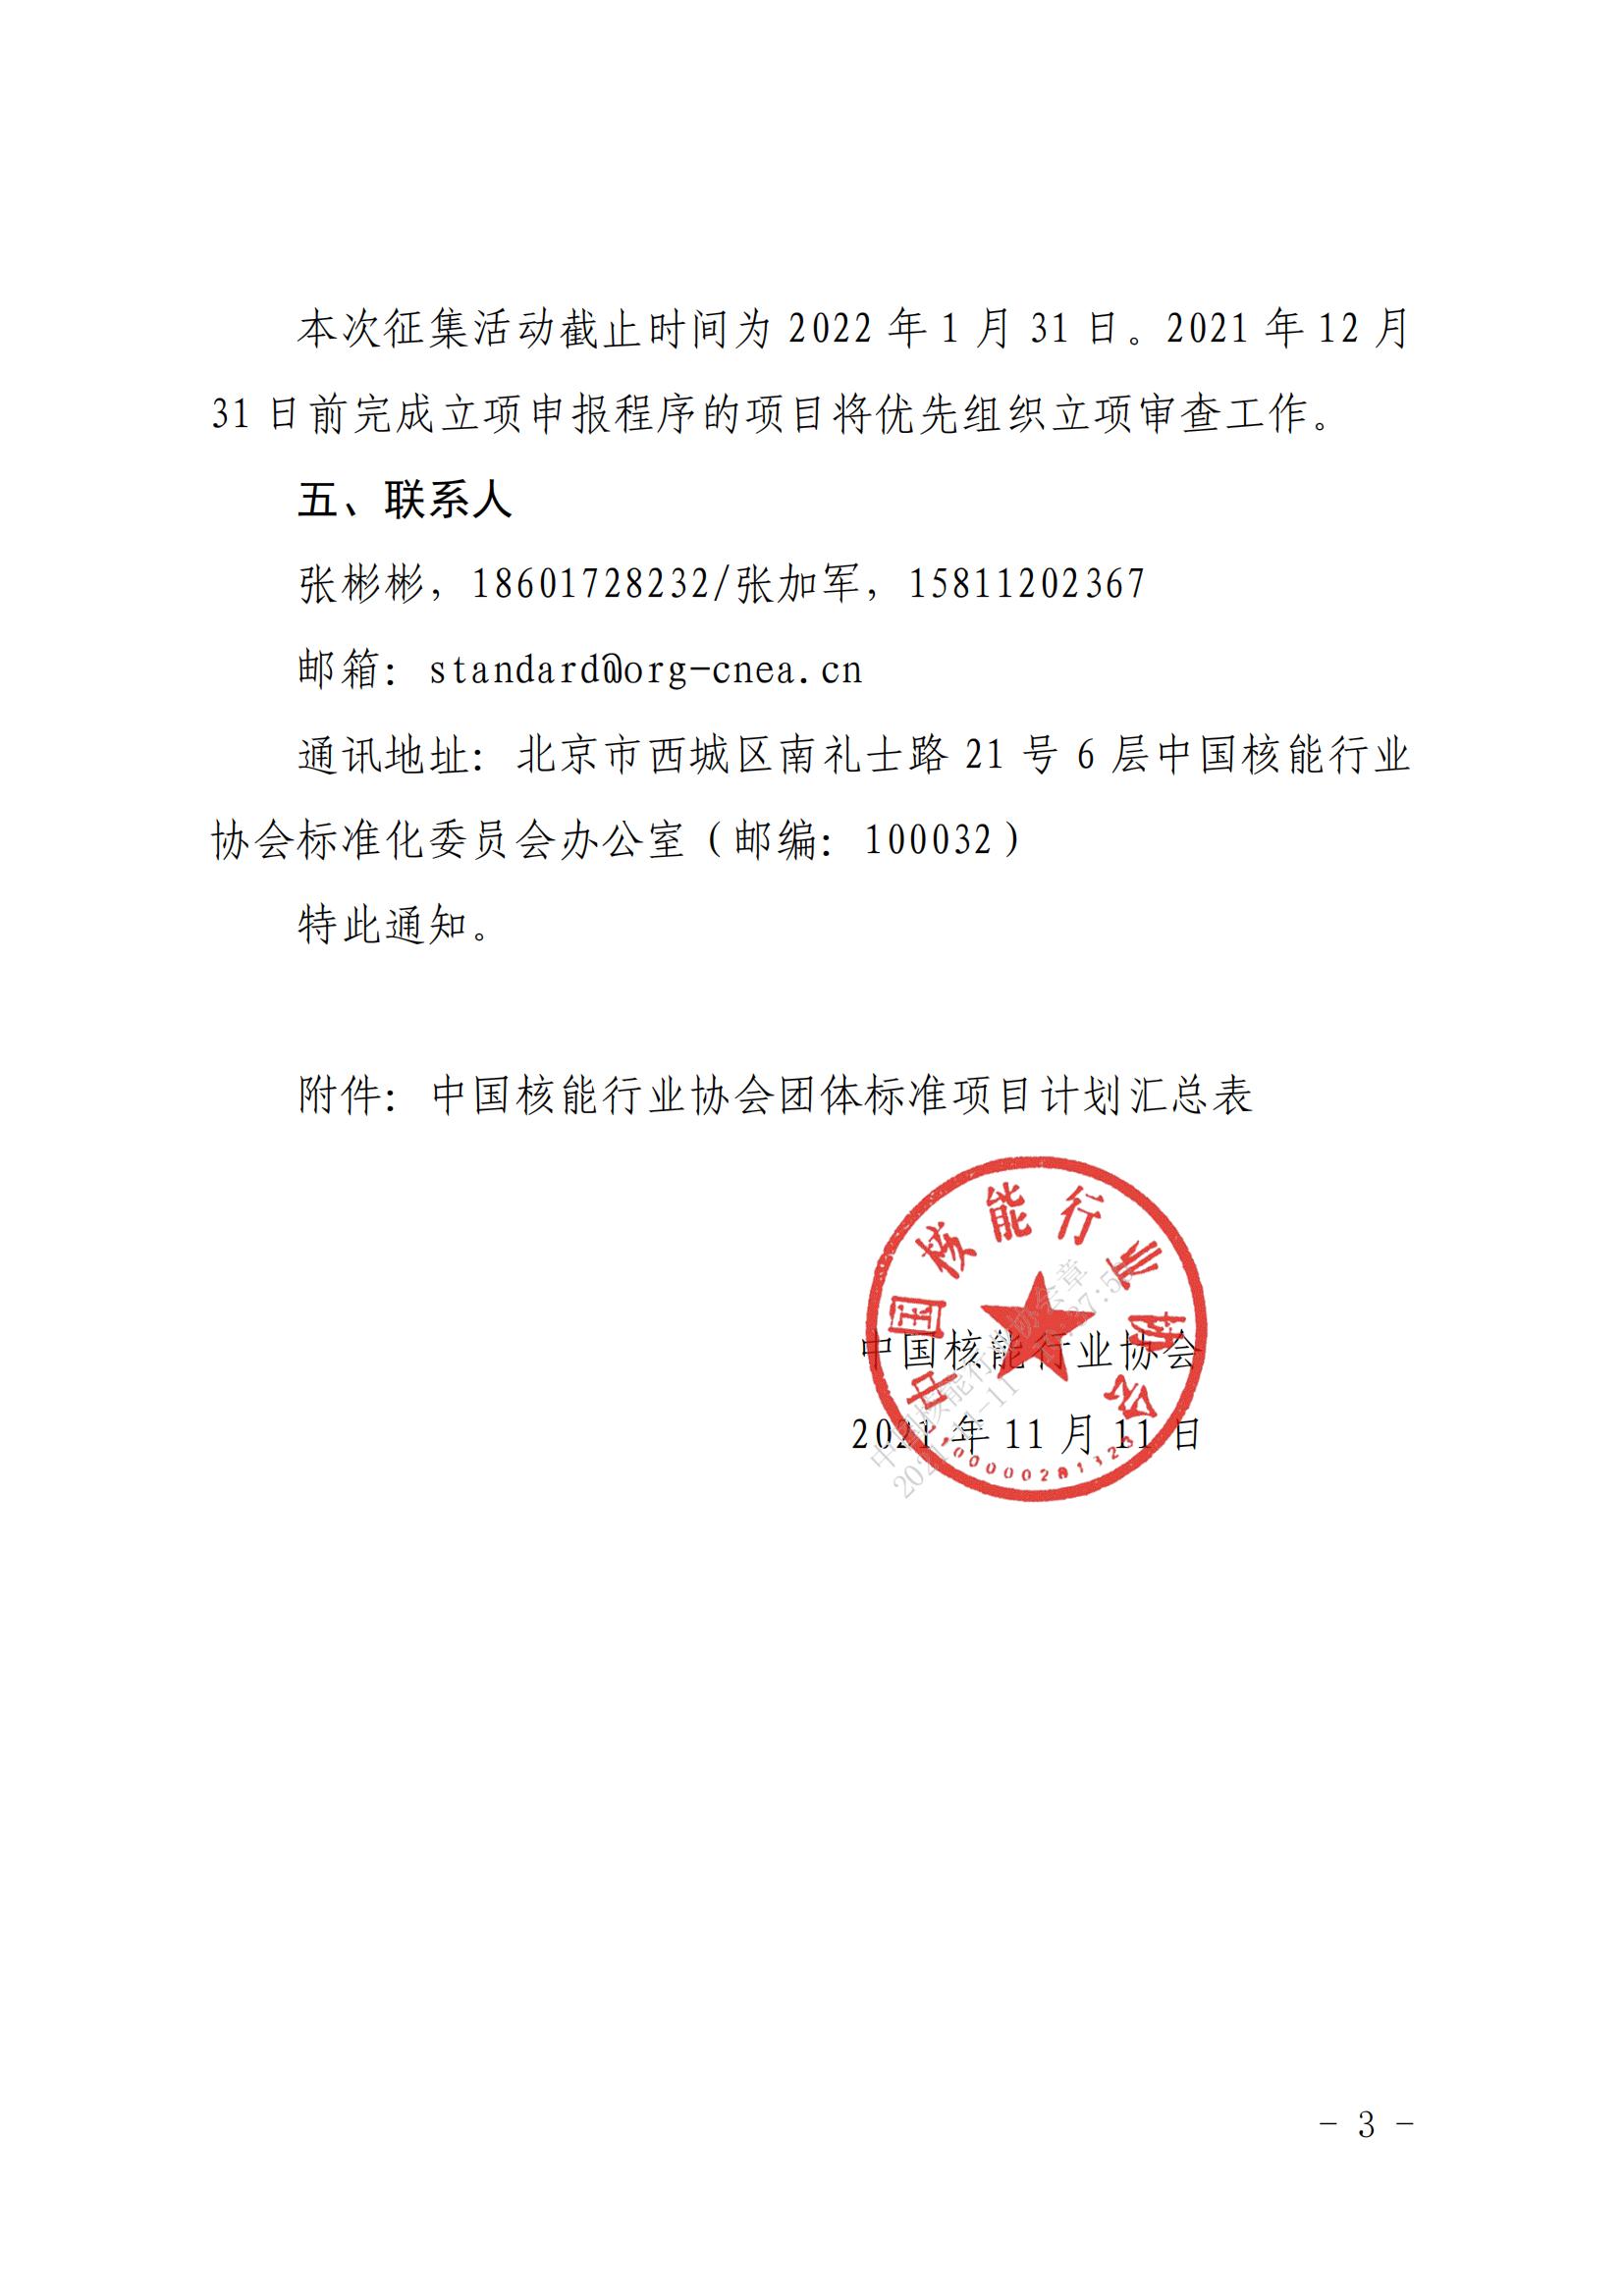 关于征集2022年度中国核能行业协会团体标准项目的通知 (1)_02.jpg